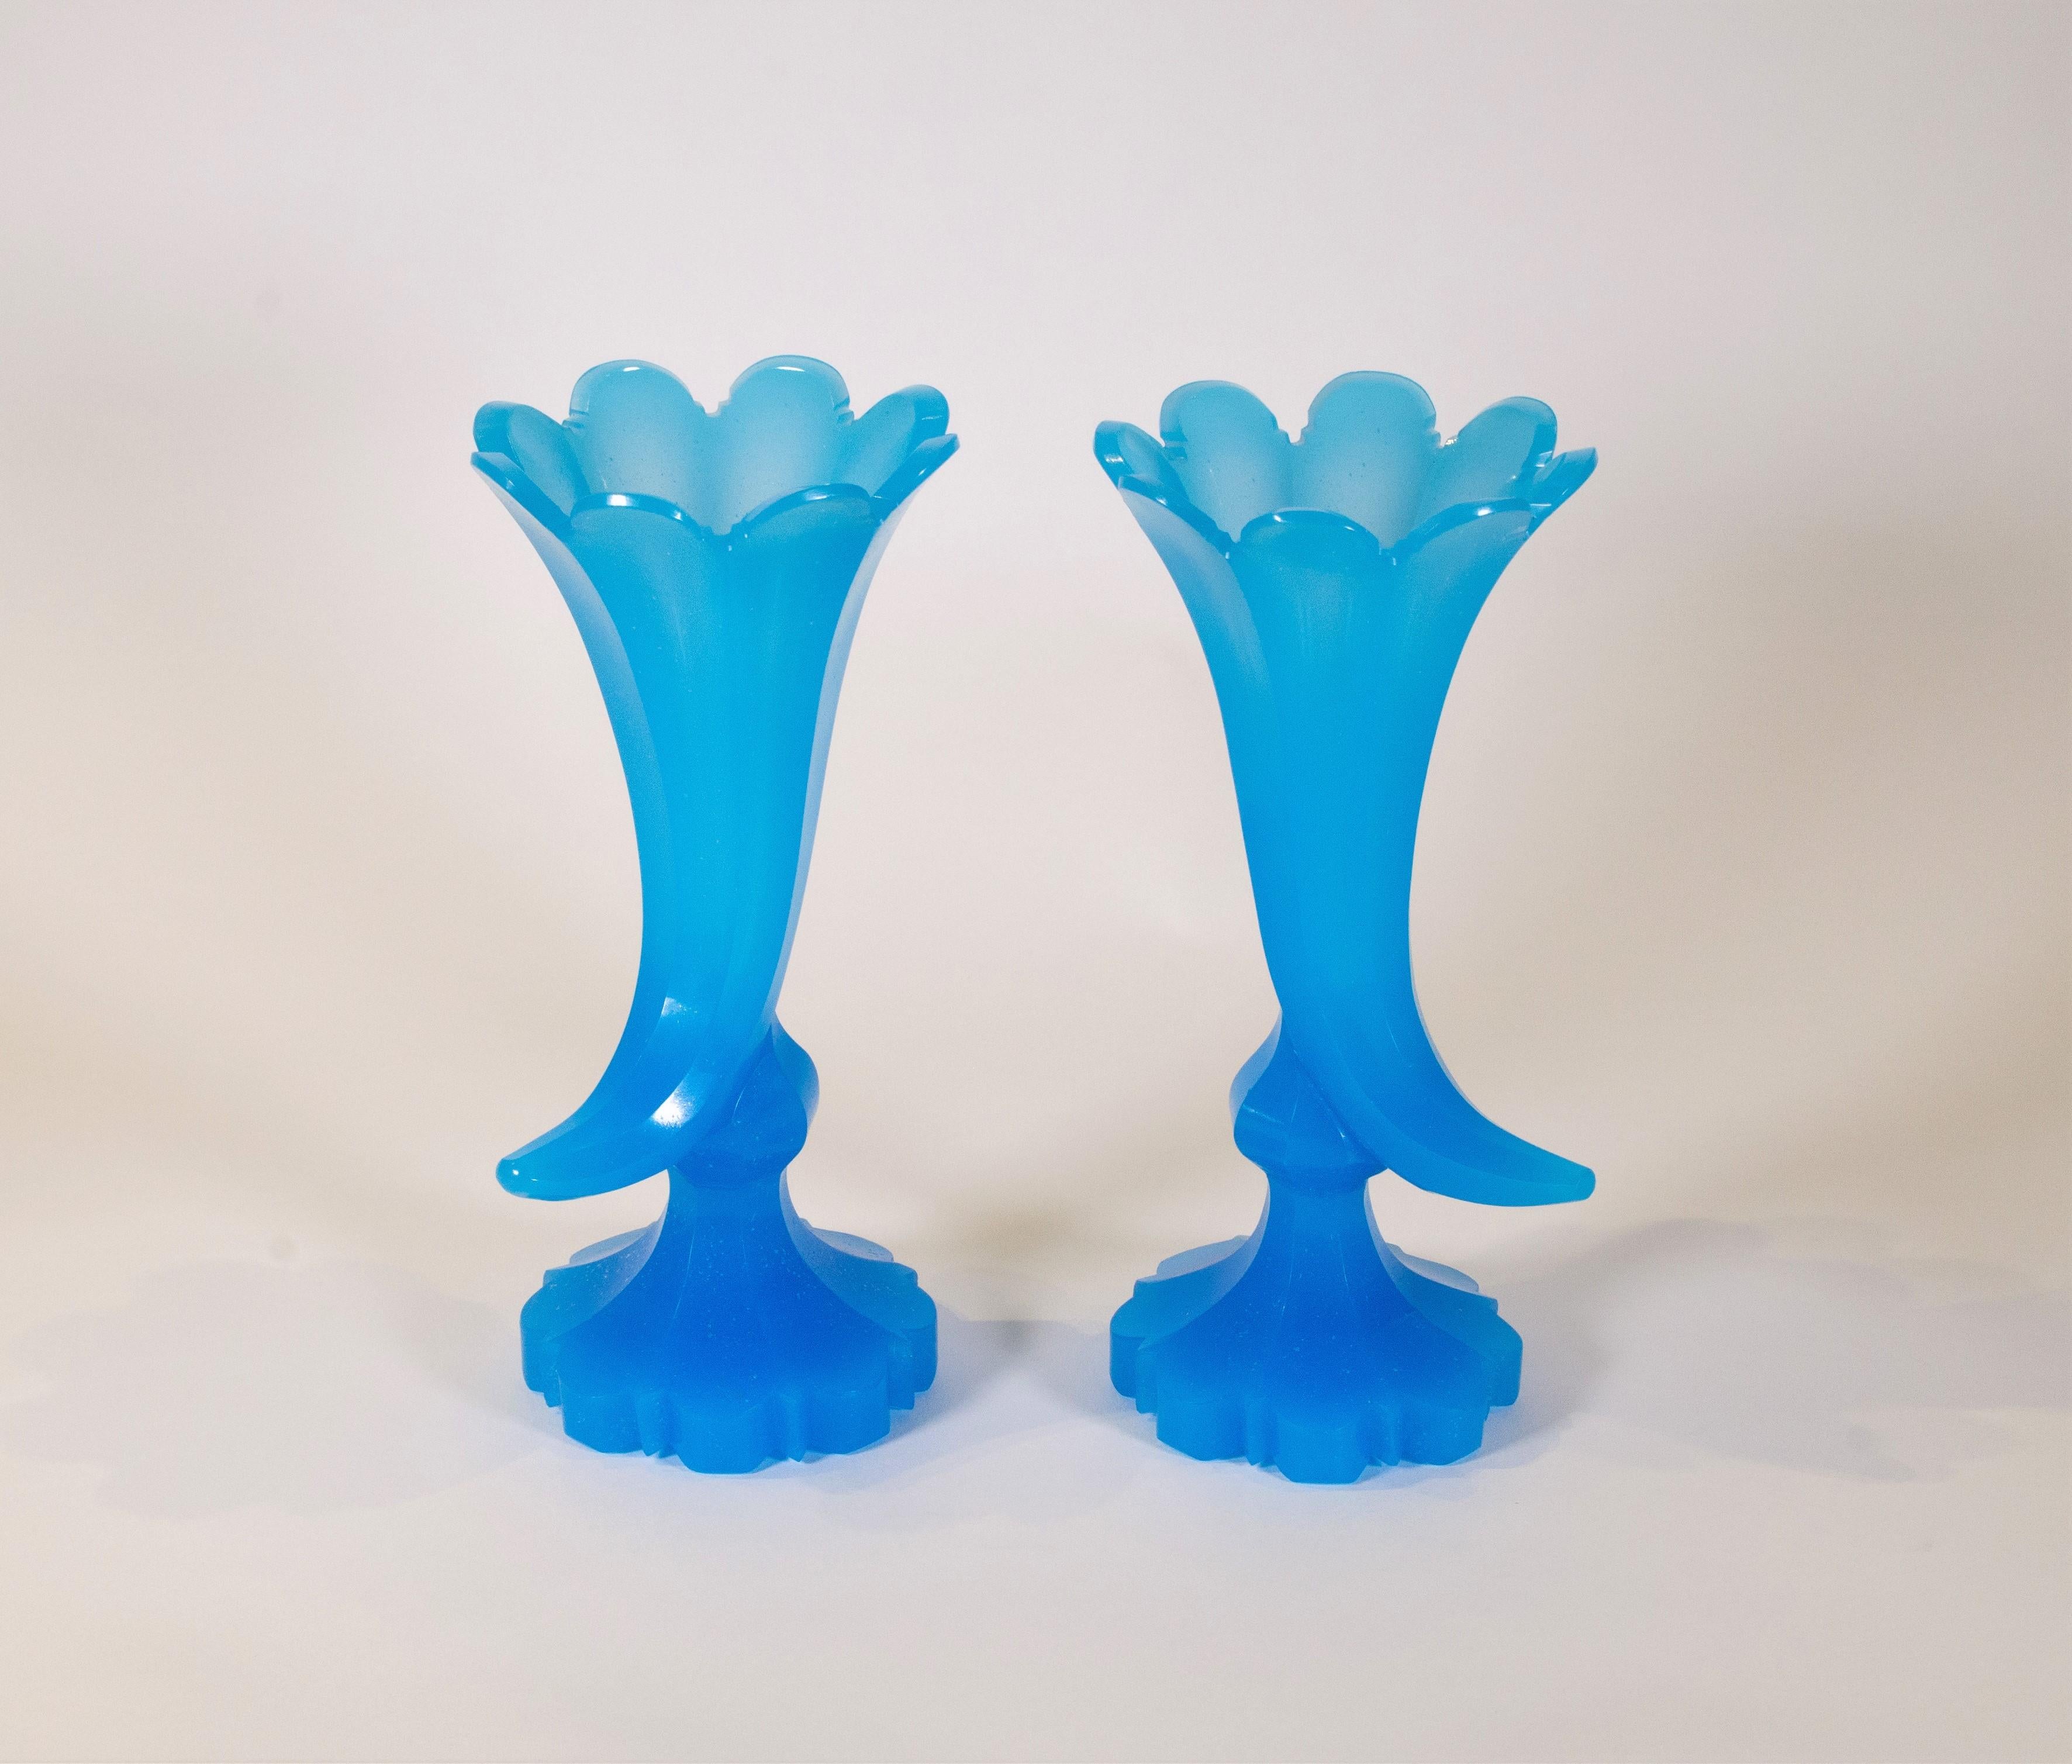 Une belle paire de vases anciens en forme de corne d'abondance en opaline bleue de Baccarat sur des socles en cristal opalin bleu. Chaque vase est façonné et découpé à la main avec une extrême précision et un savoir-faire exceptionnel. La teinte